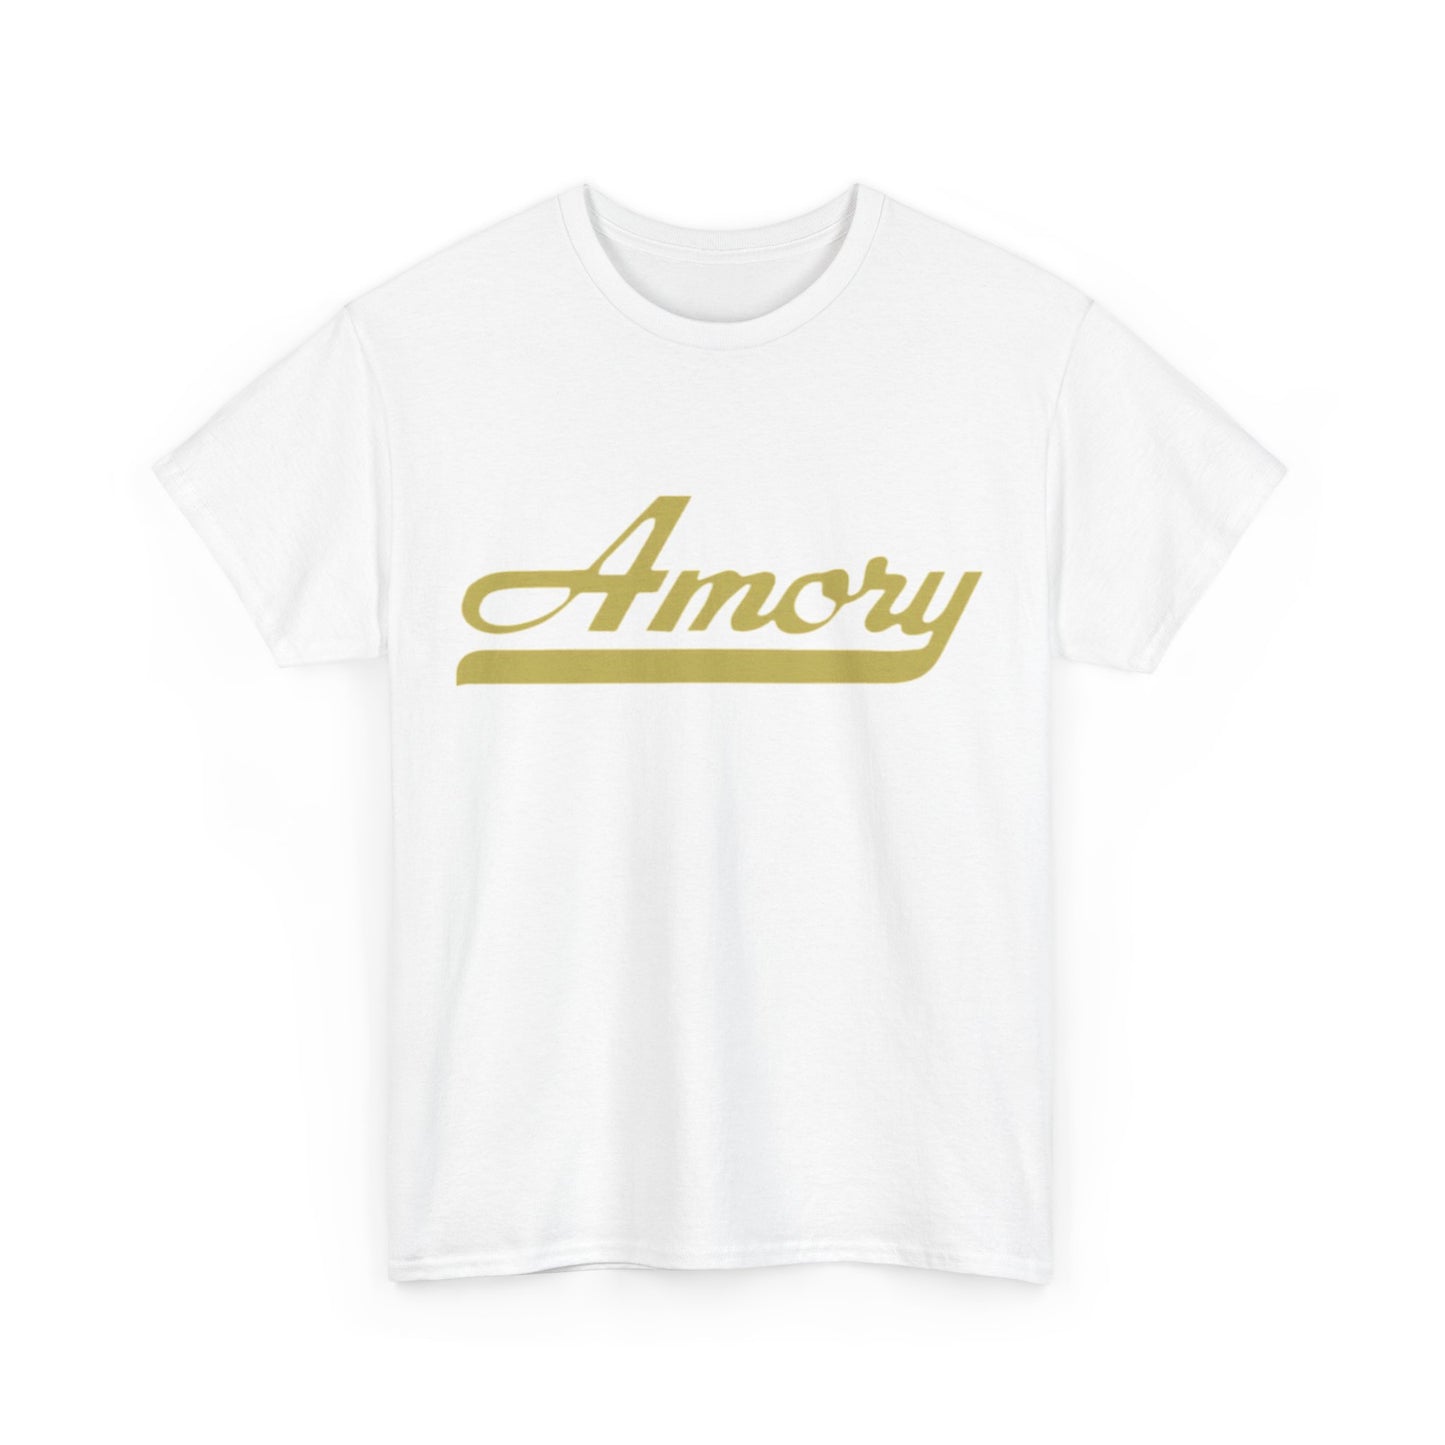 Amory t shirts